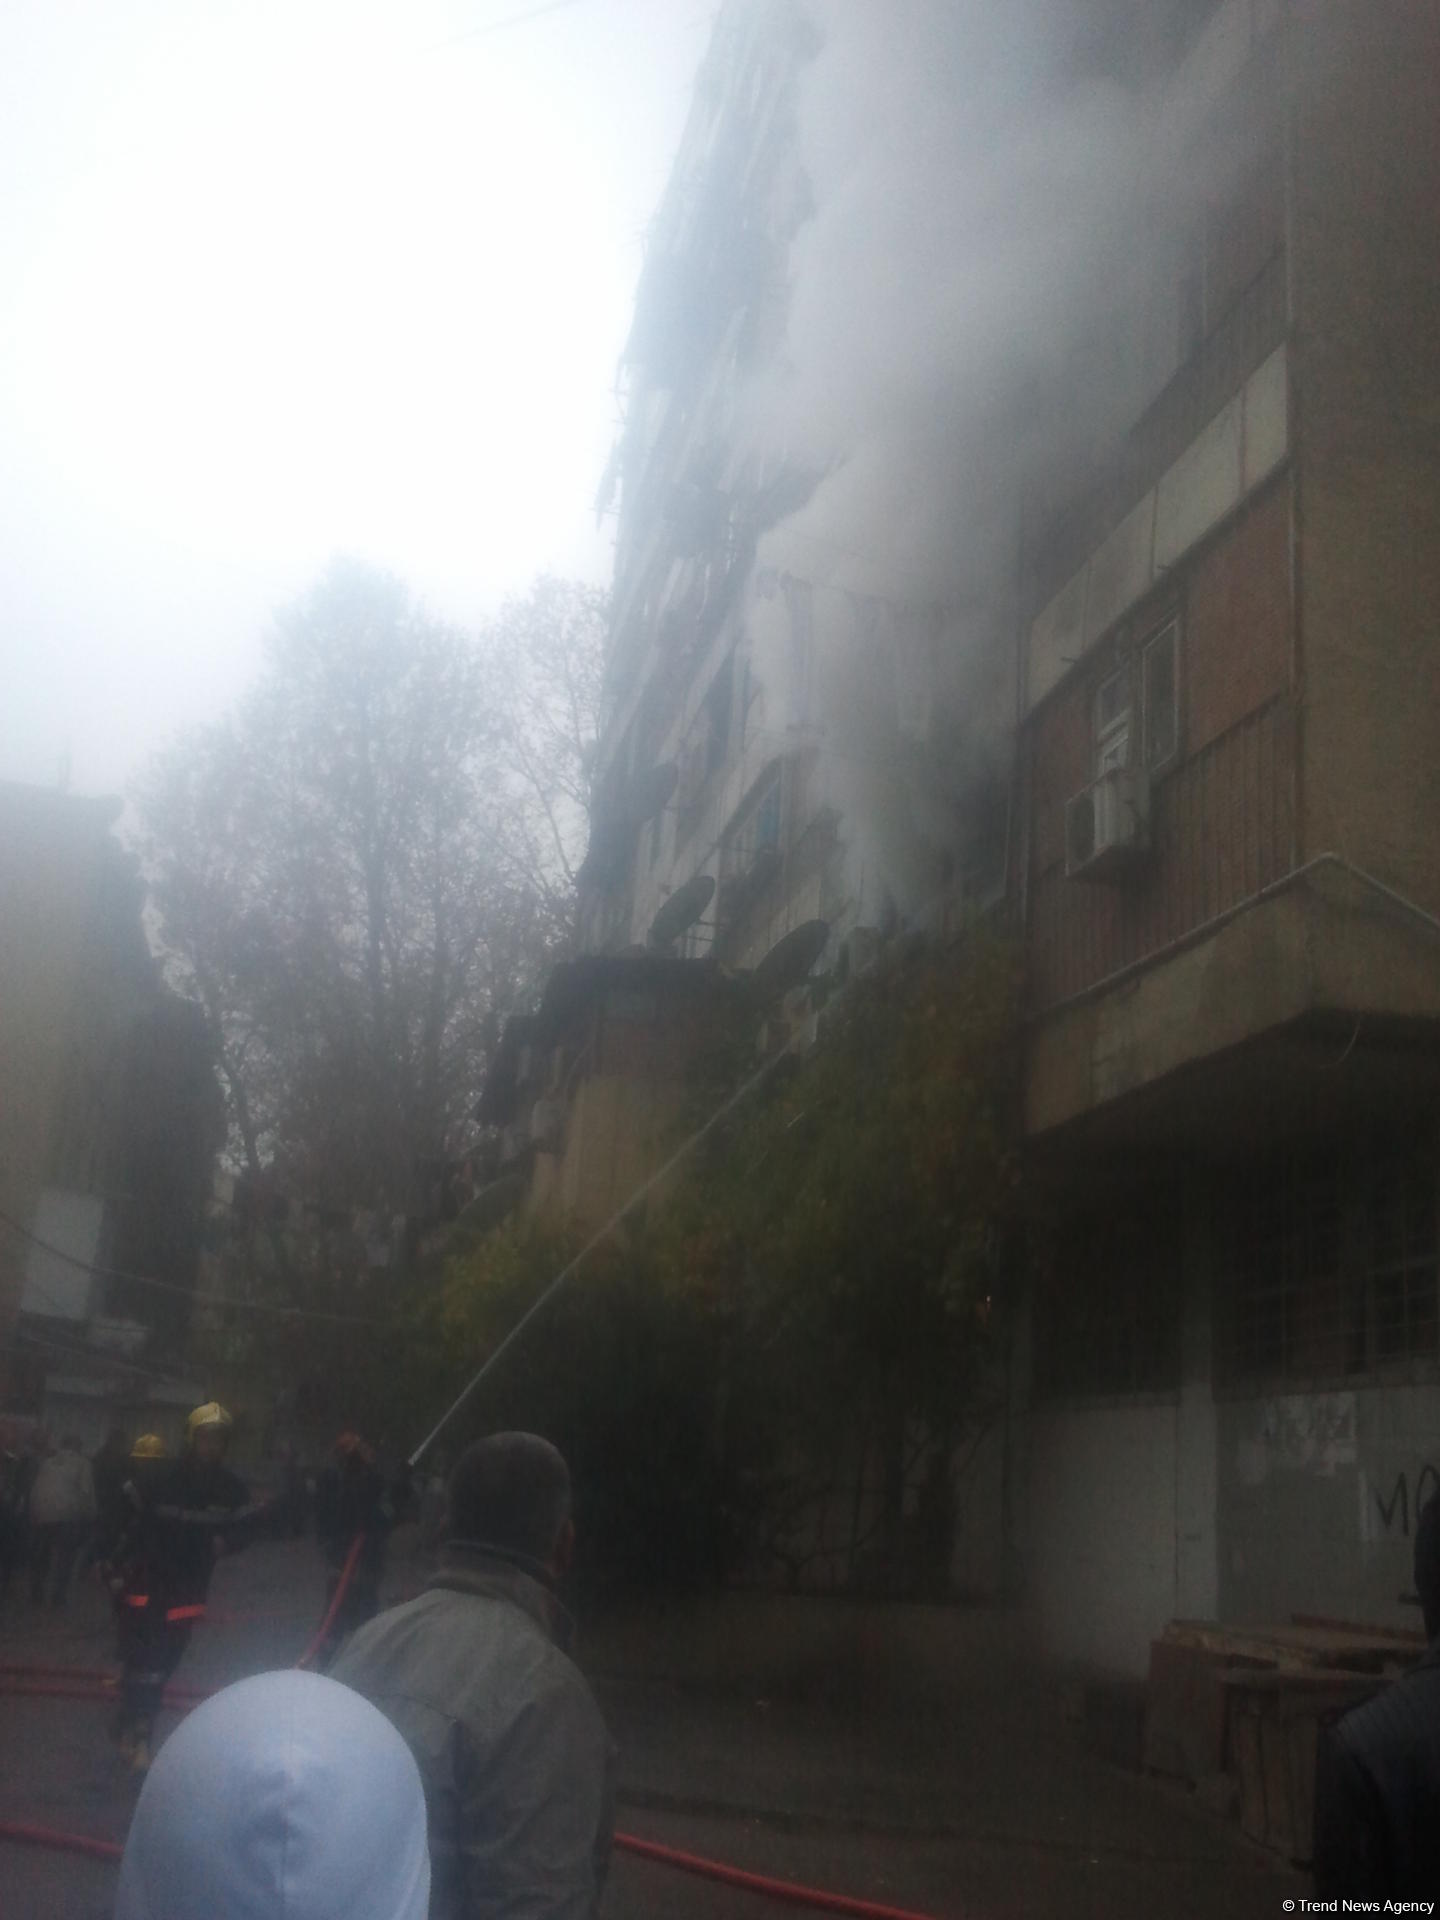 Пожар в общежитии в Баку потушен (ФОТО) (Обновлено)